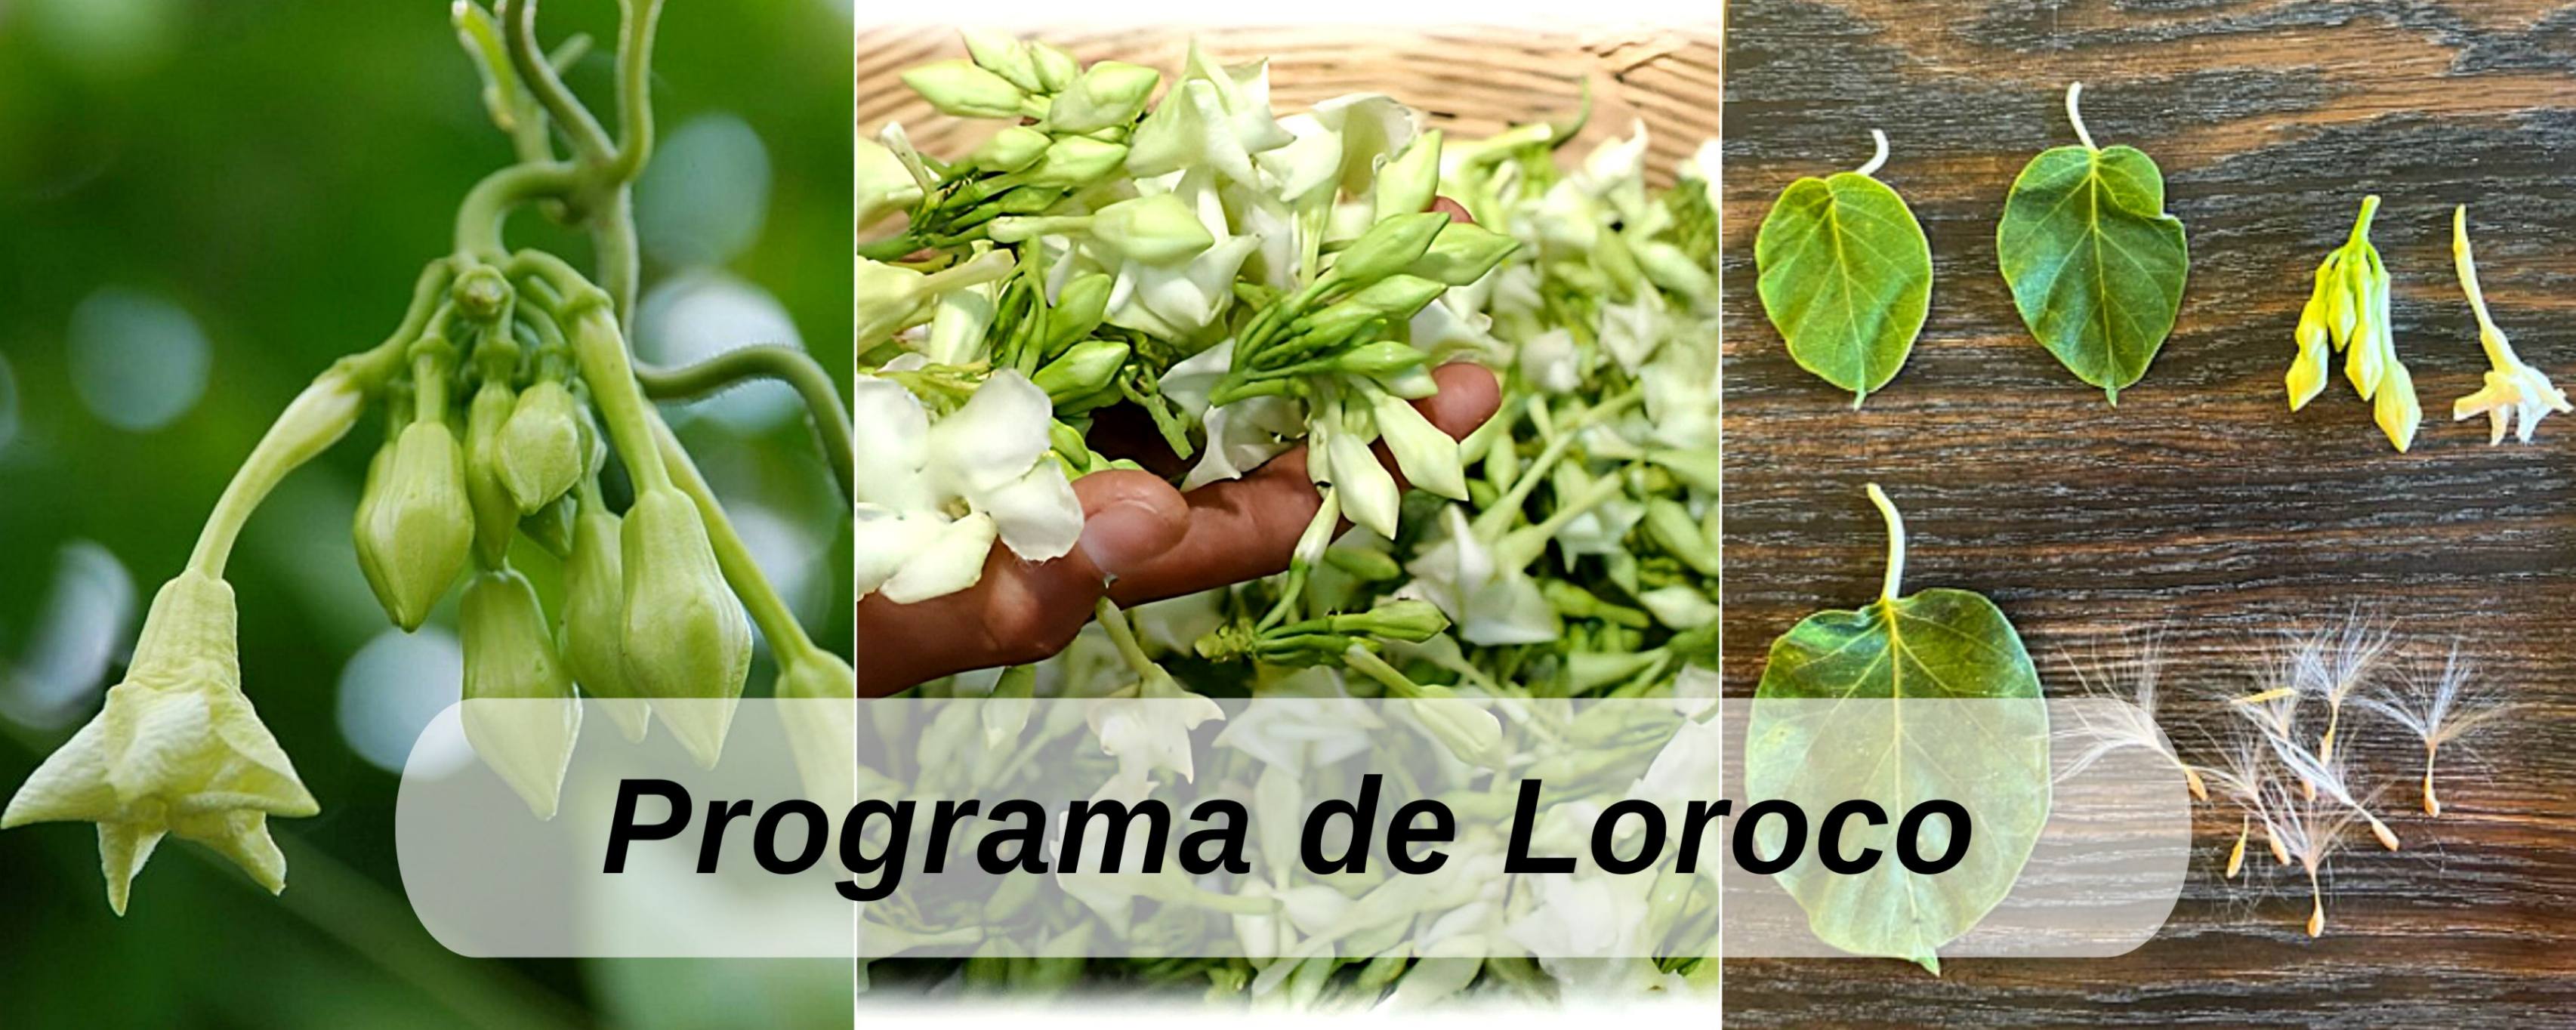 Loroco ICTA Guatemala